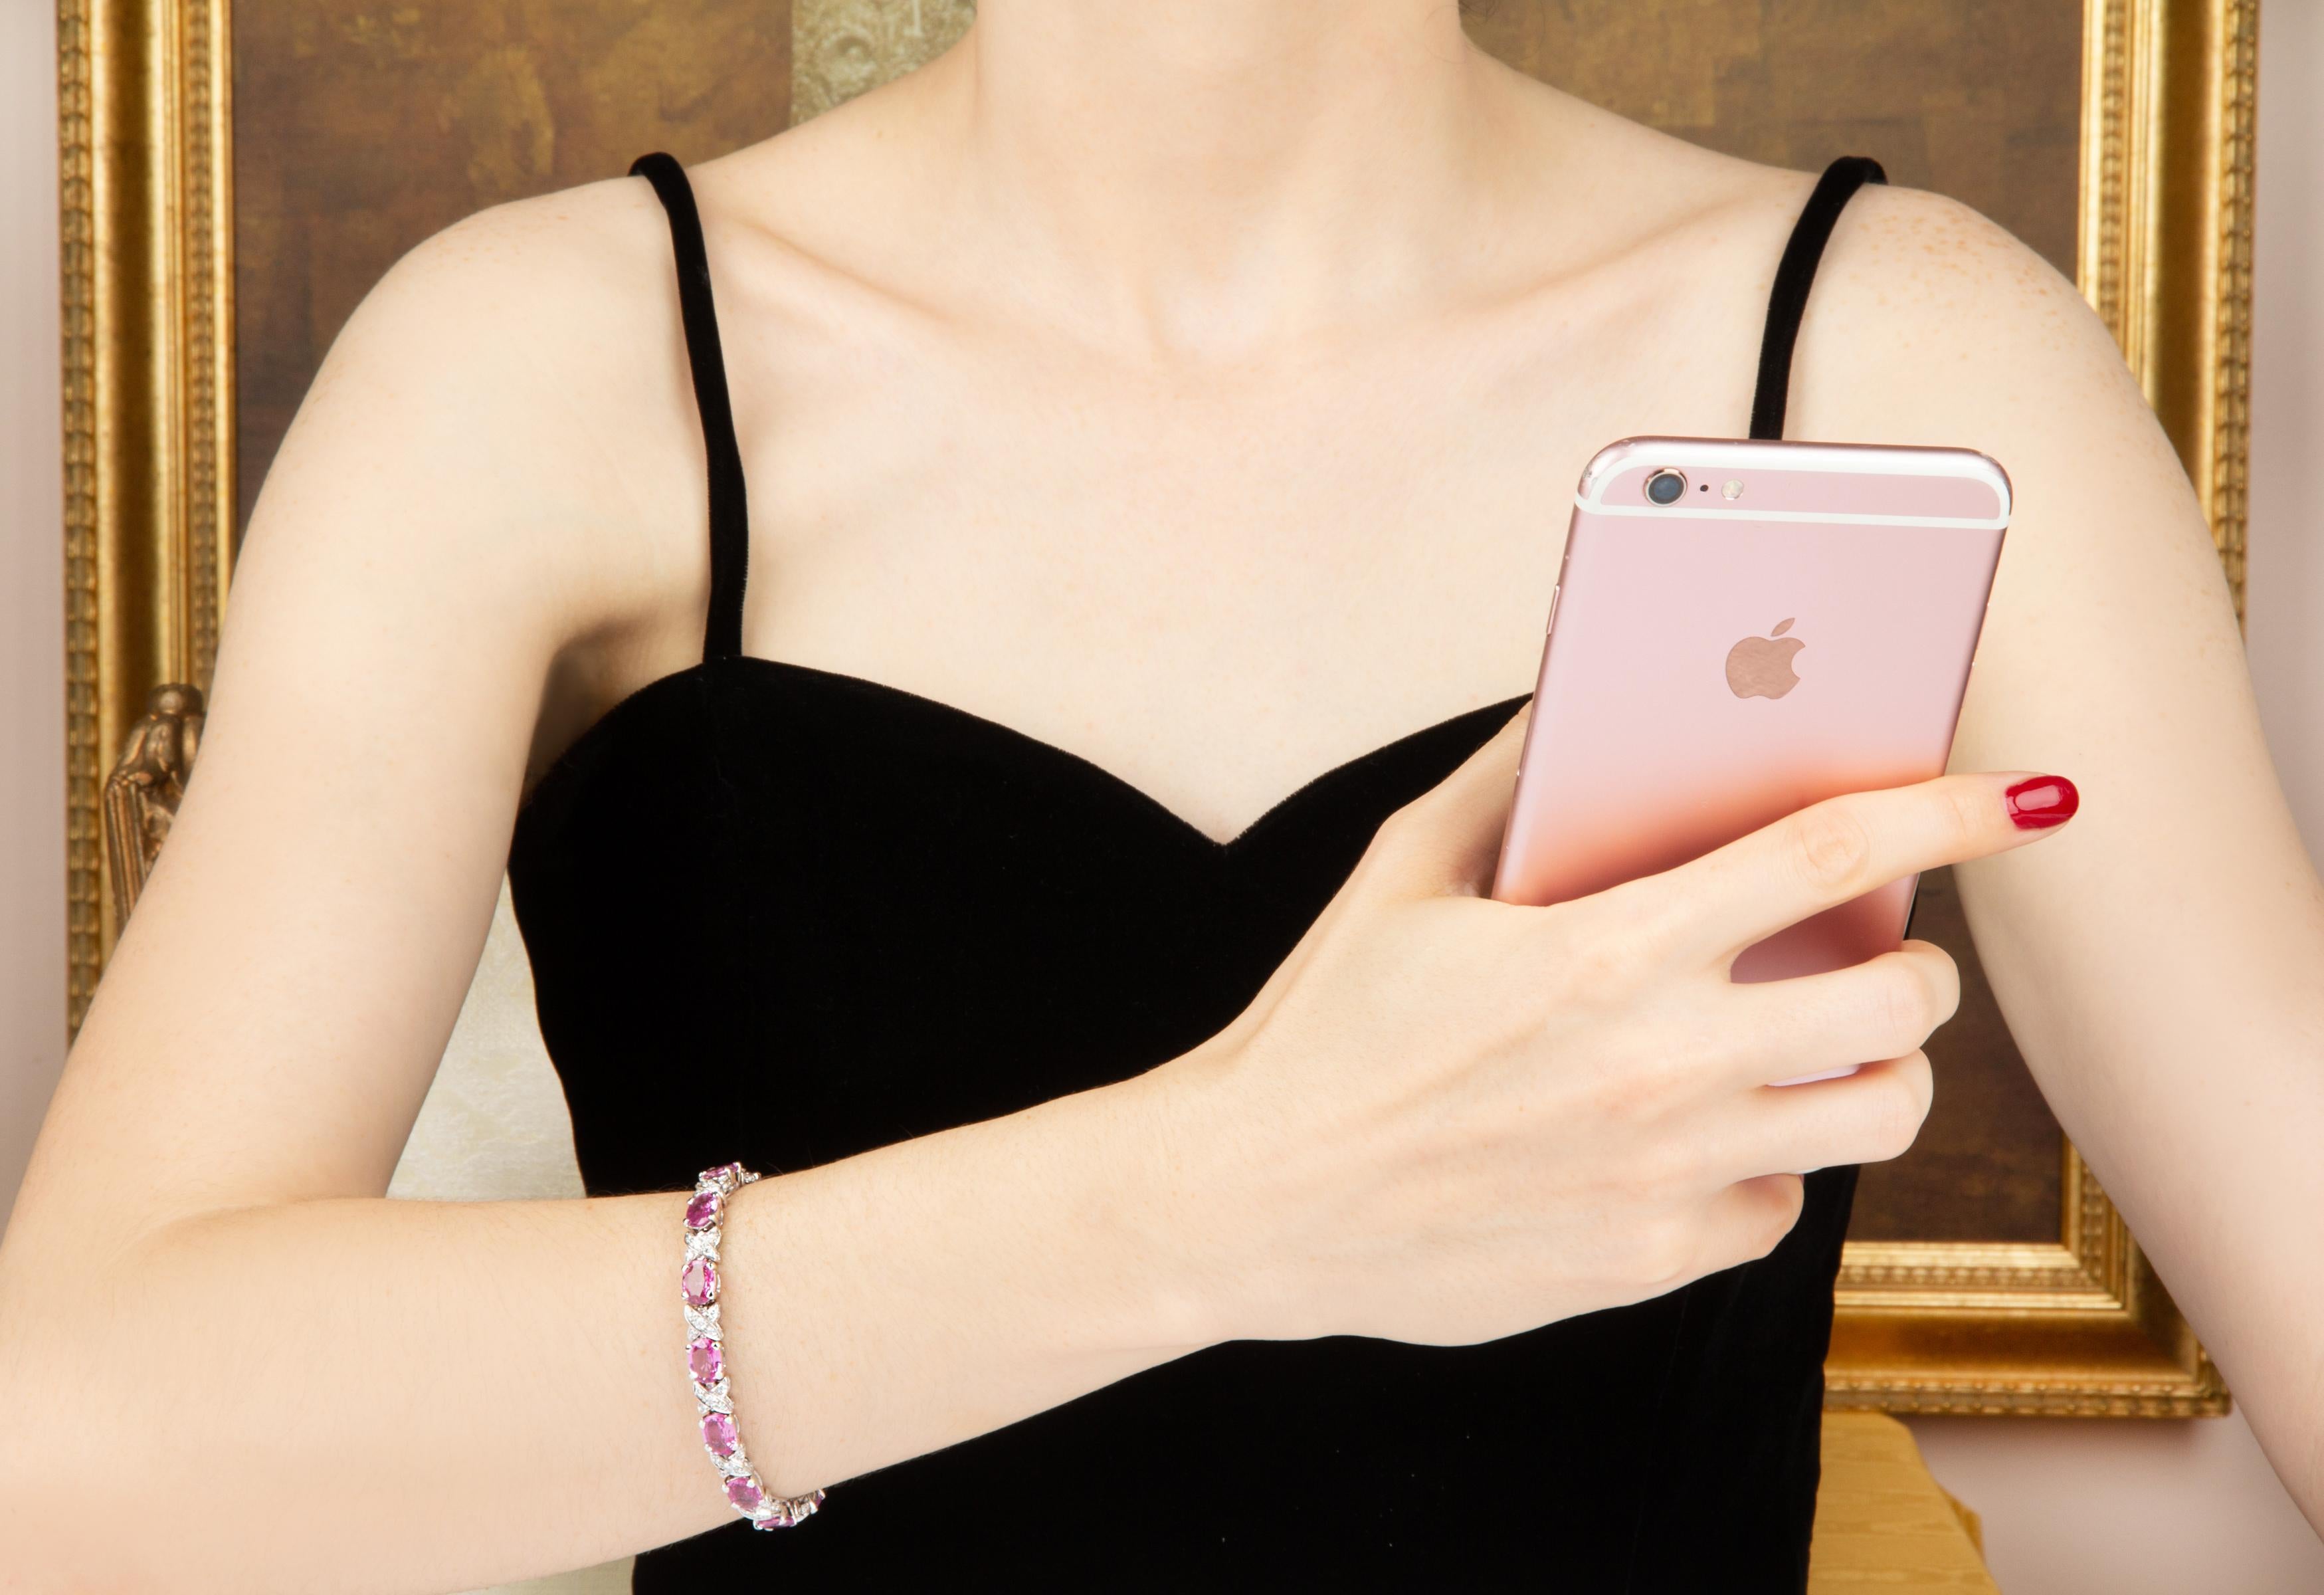 Das rosafarbene Saphirarmband besteht aus oval geschliffenen, facettierten Saphiren in brillanten Farbtönen mit einem Gesamtgewicht von etwa 16 Karat. Das Design ist mit 2,20 Karat Diamanten von höchster Qualität (F-G/VVS) besetzt.
Das Armband wurde